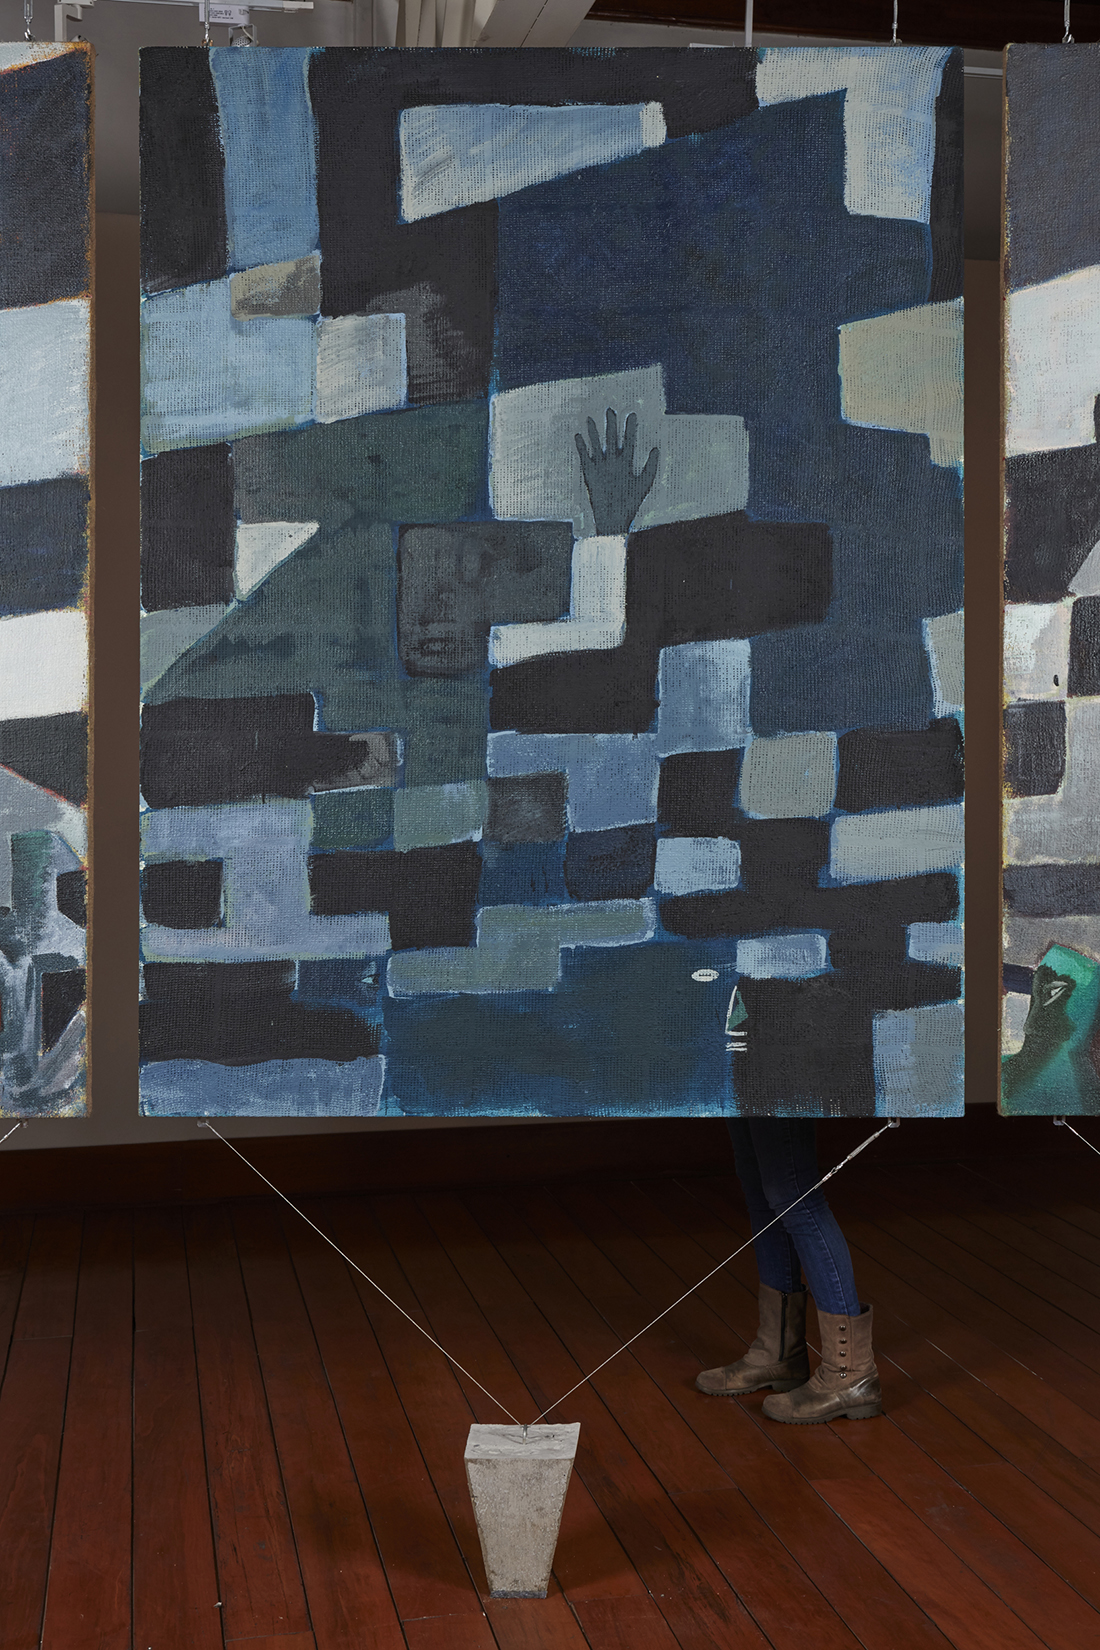    Una nueva era, panel O38t  , 2018, óleo sobre algodón, 183 x 140 cm. 